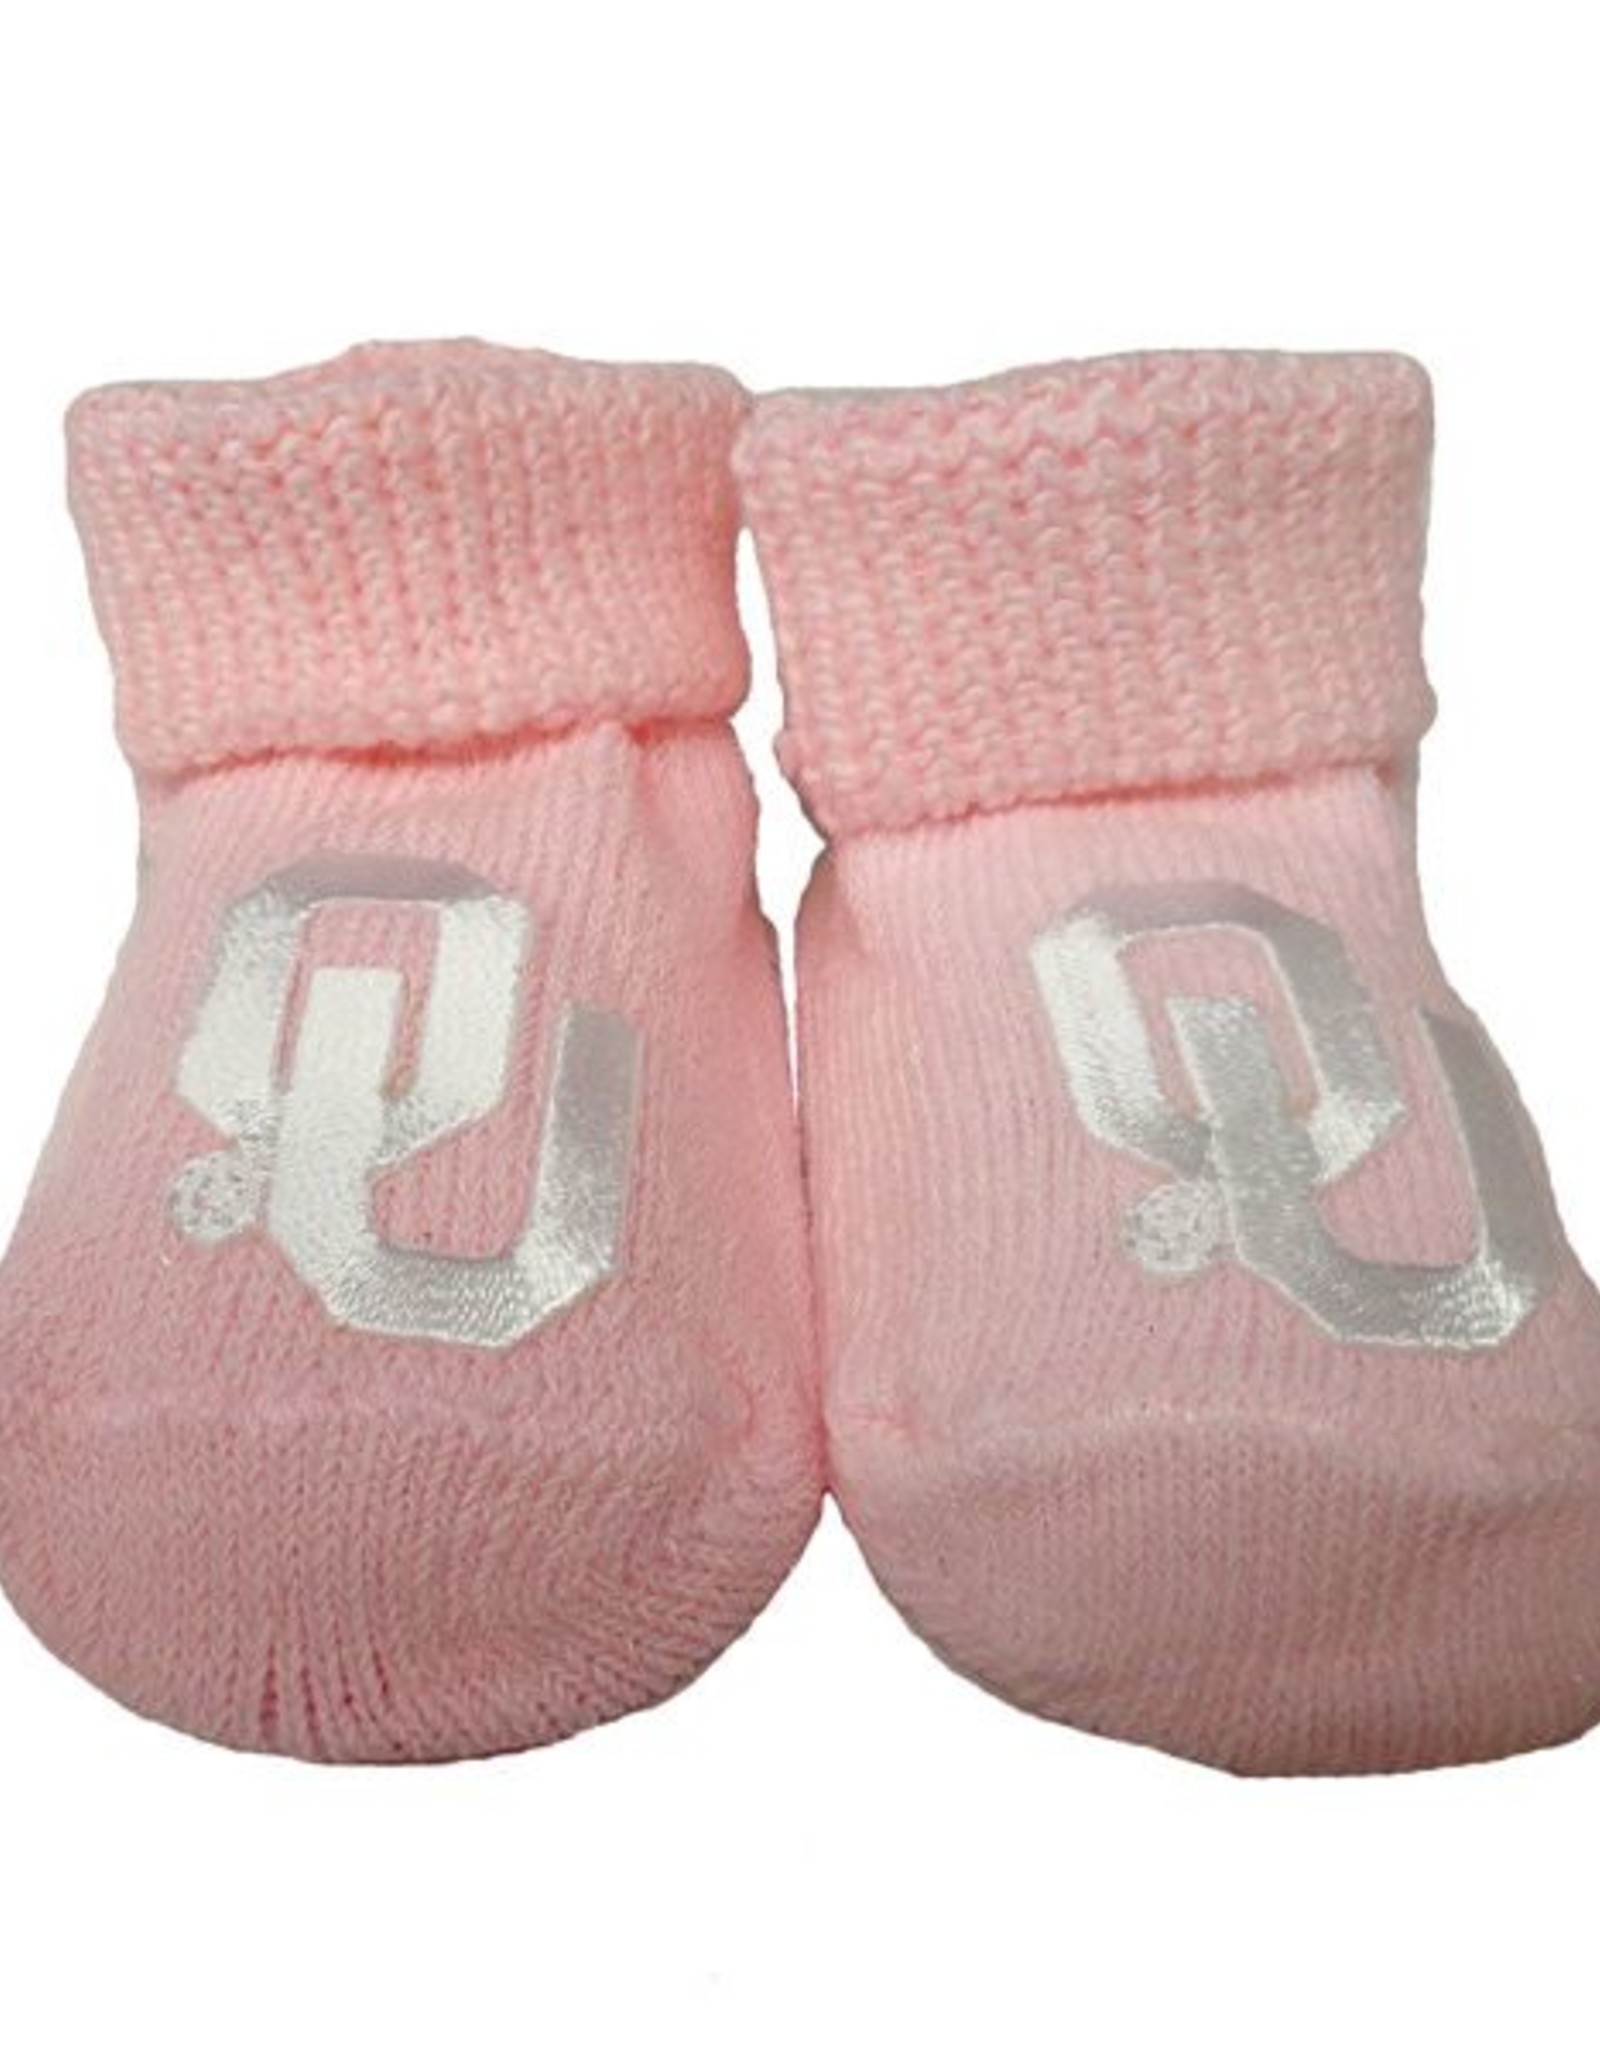 Creative Knitwear Newborn Pink OU Booties